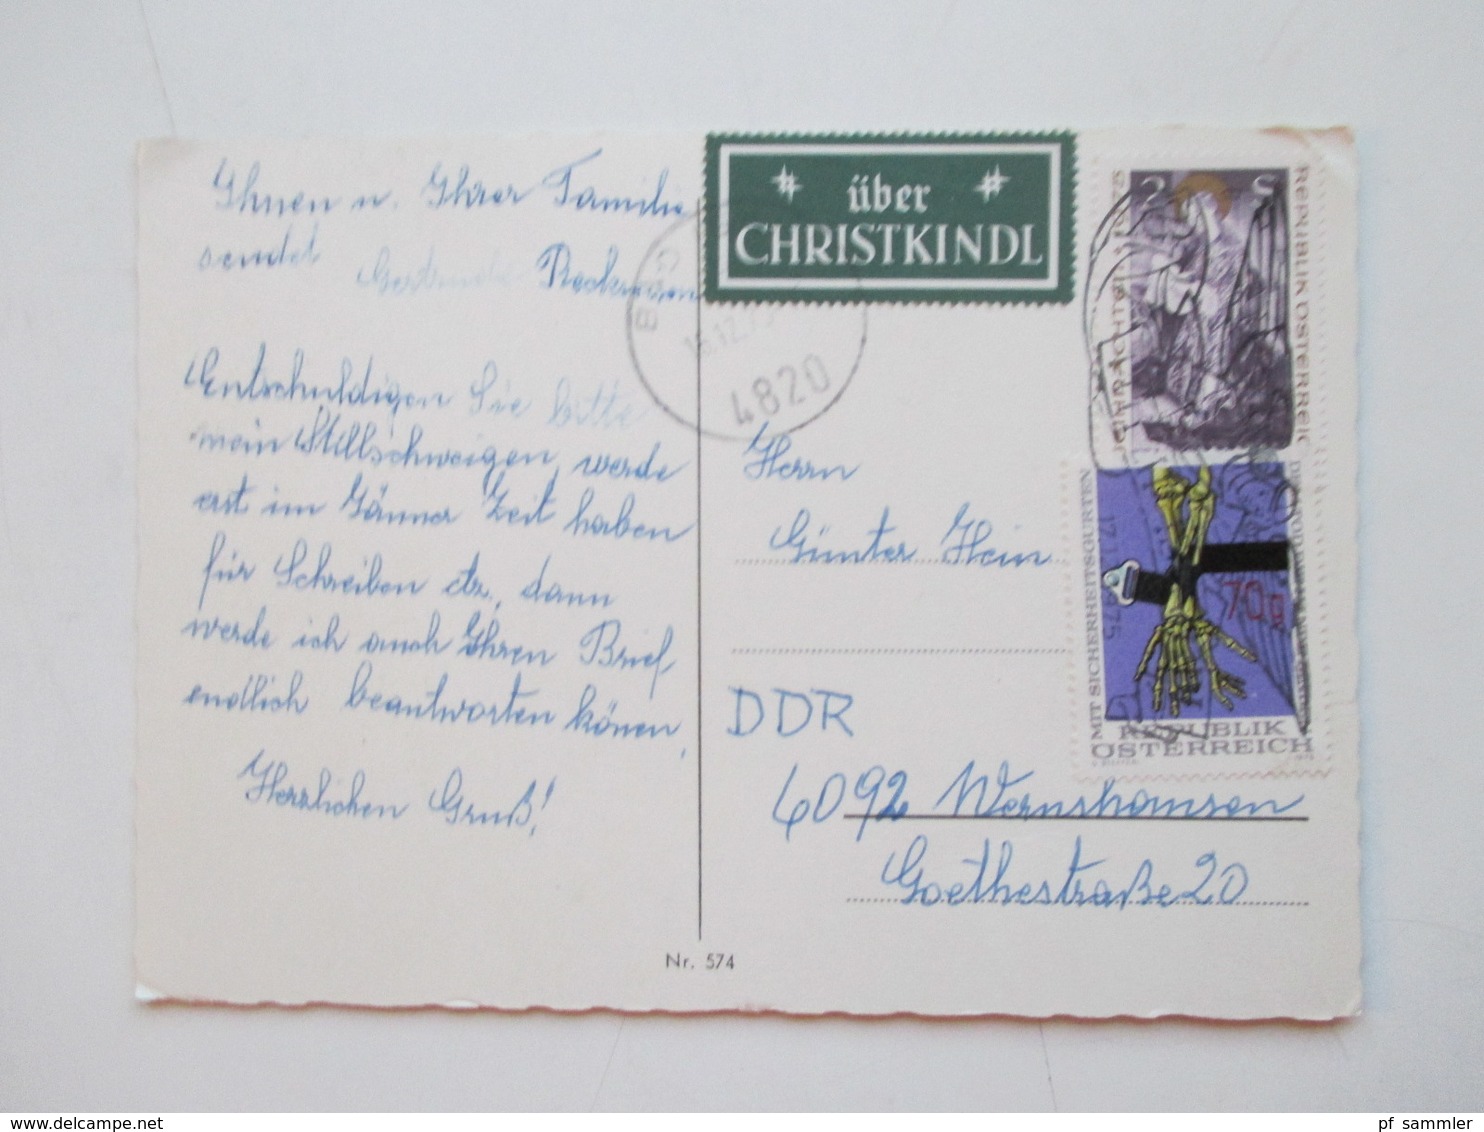 Belegeposten Österreich Christkindl 1956 - 2012 mit über 60 Stk. etl. Leitzettel über Christkindl Fundgrube!! Reco usw.